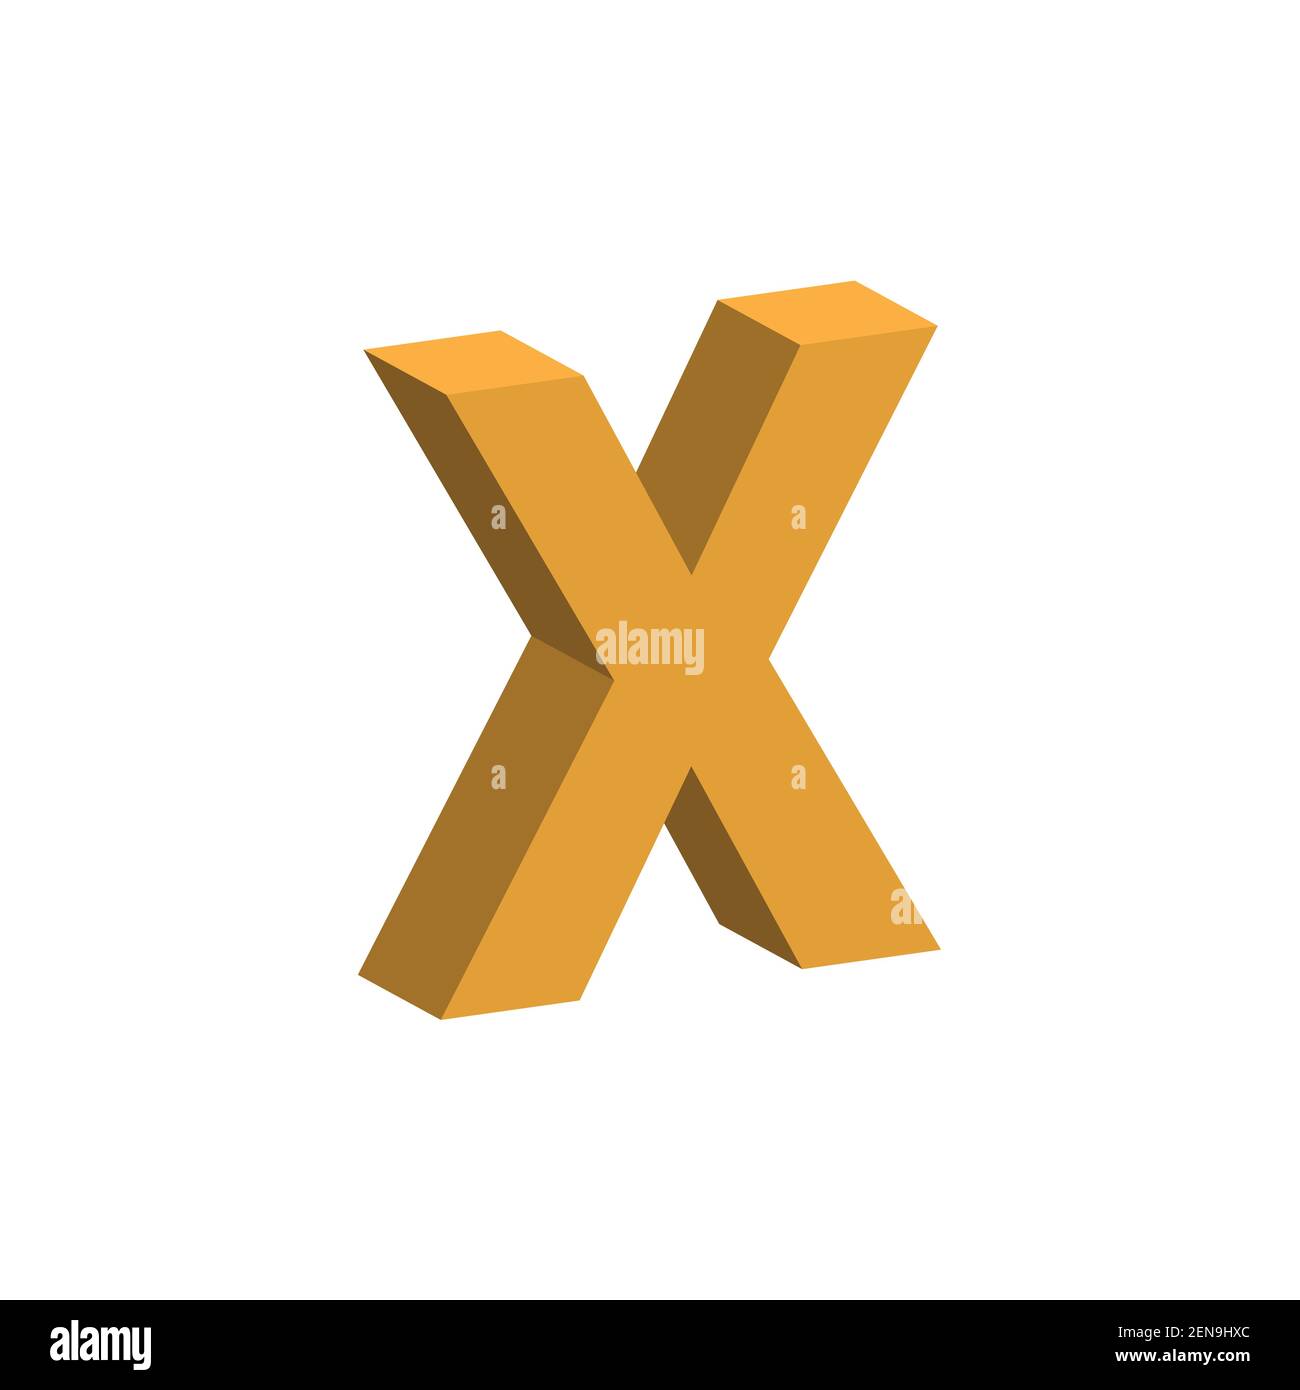 Initial letter N & K NK luxury art vector mark logo, gold color on black  background. Stock-Vektorgrafik